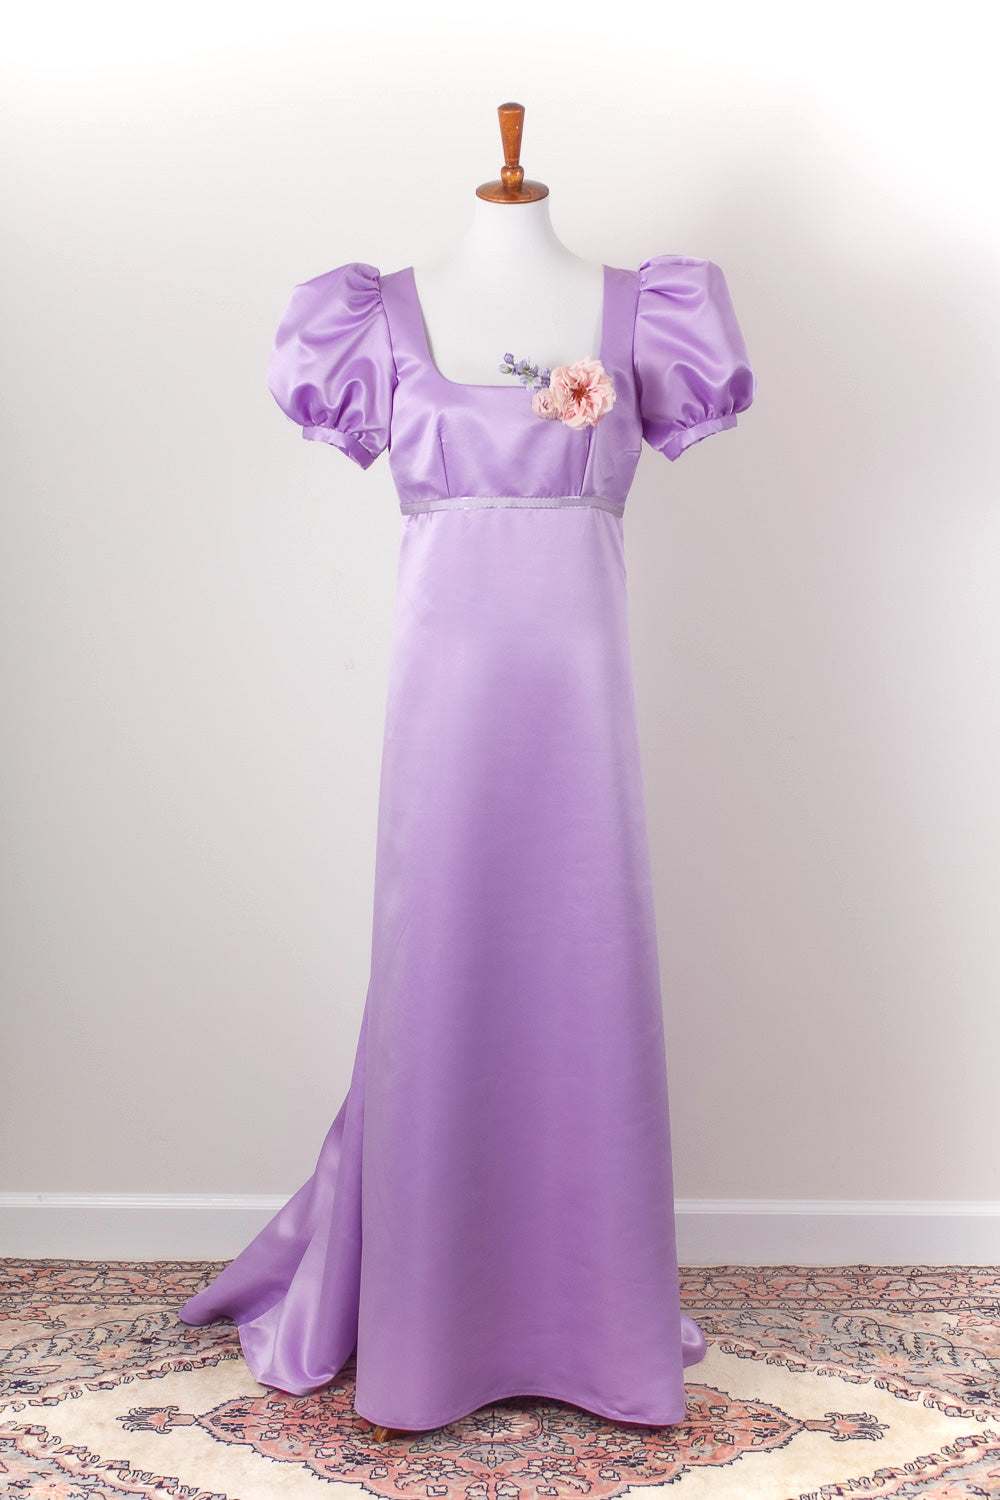 Regency era gown - front view